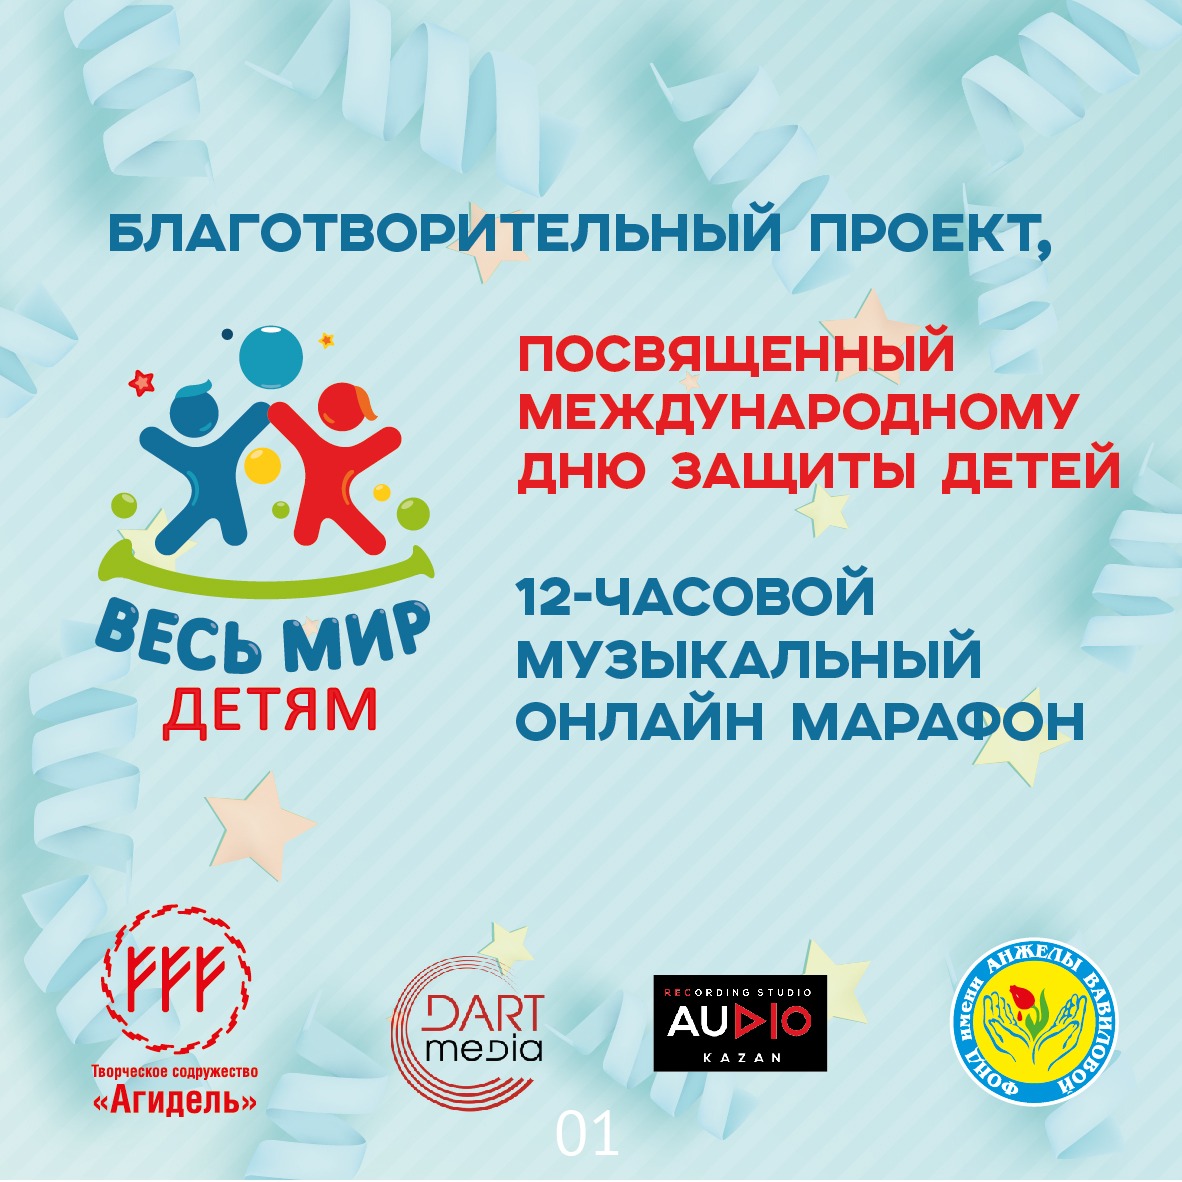 Онлайн-марафон благотворительного проекта «Весь мир детям» проходит в Казани